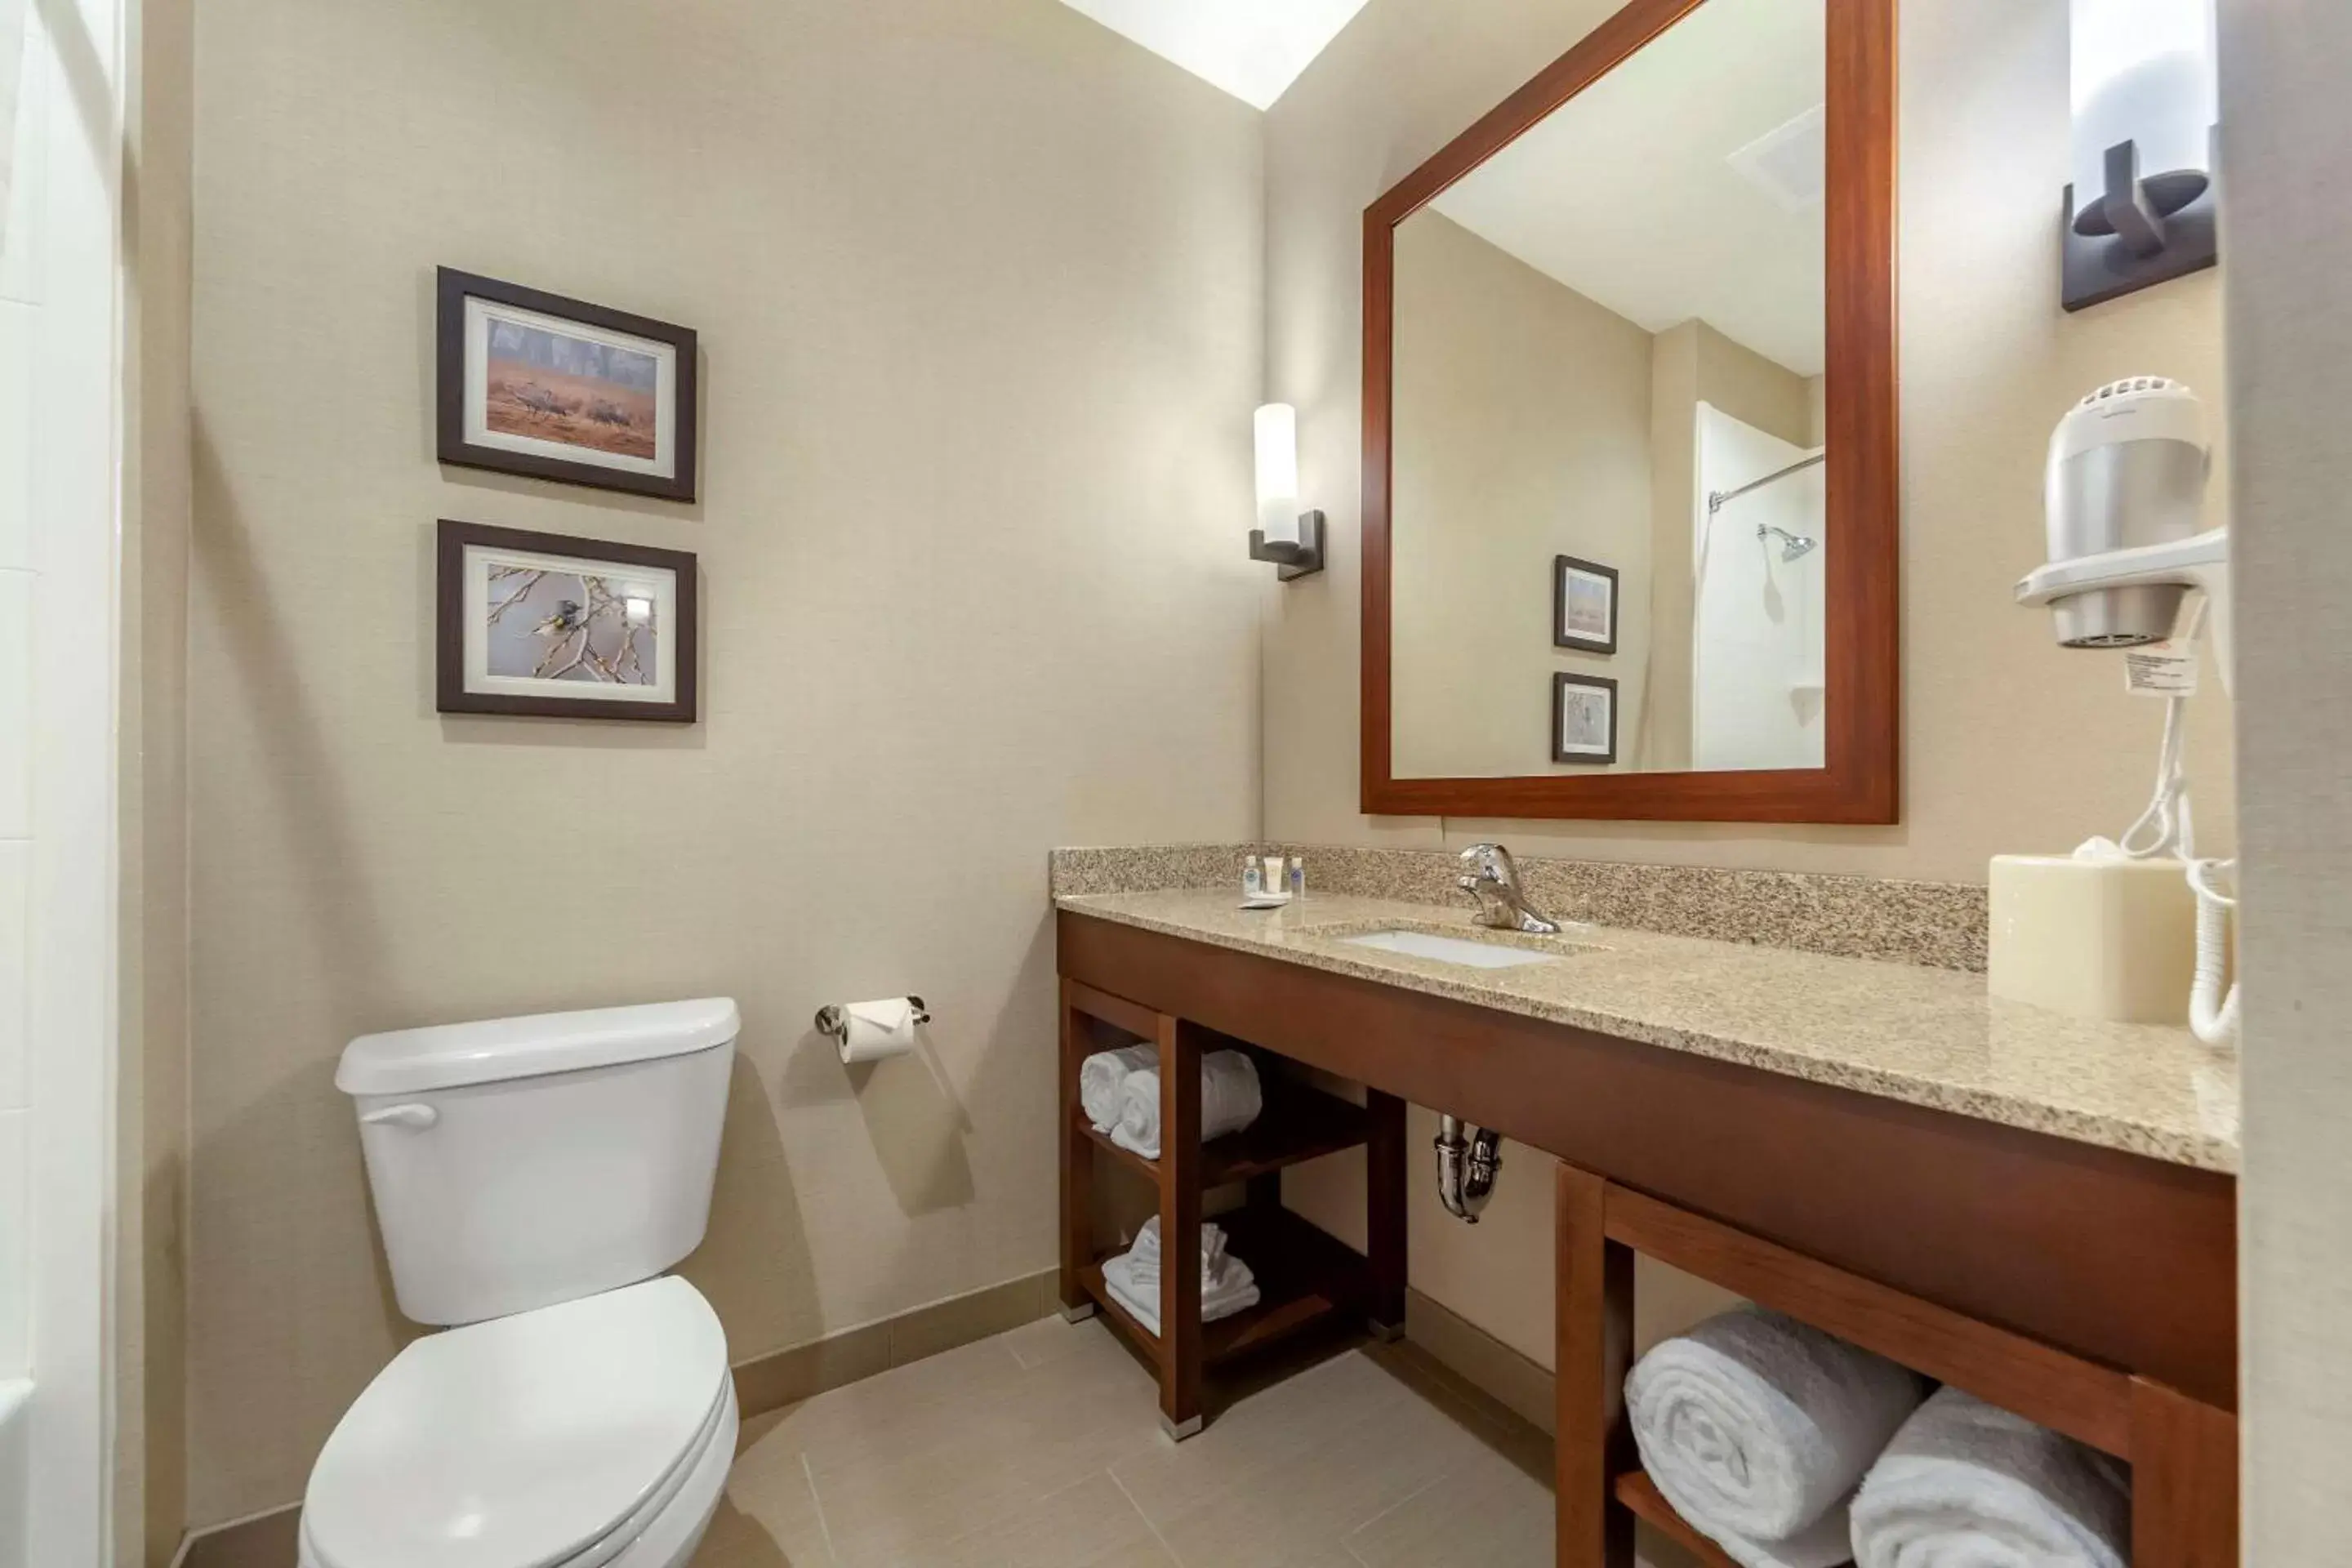 Bedroom, Bathroom in Comfort Suites Grand Island